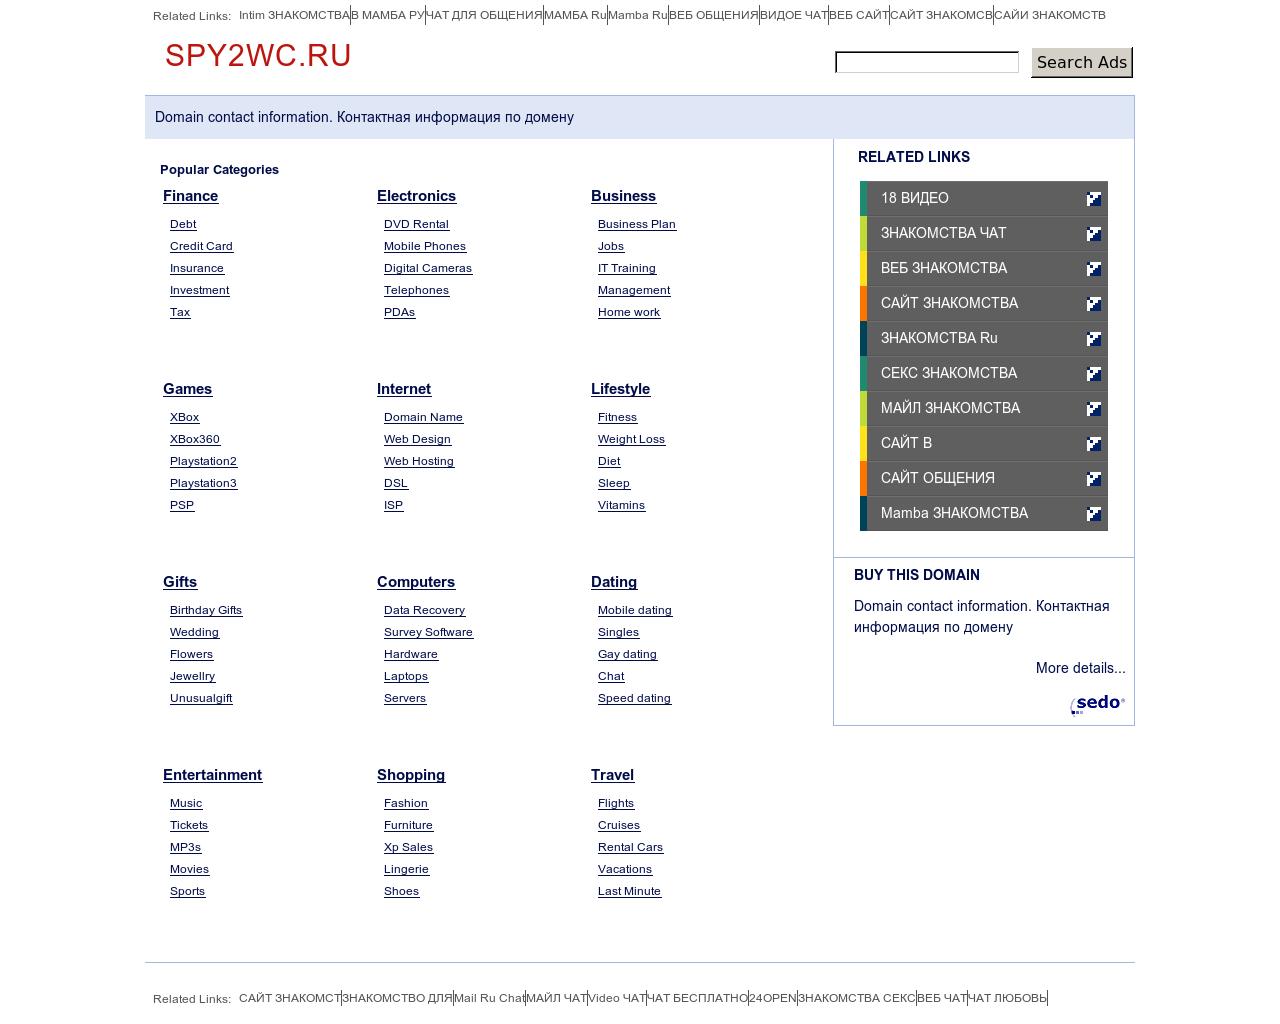 Изображение сайта spy2wc.ru в разрешении 1280x1024